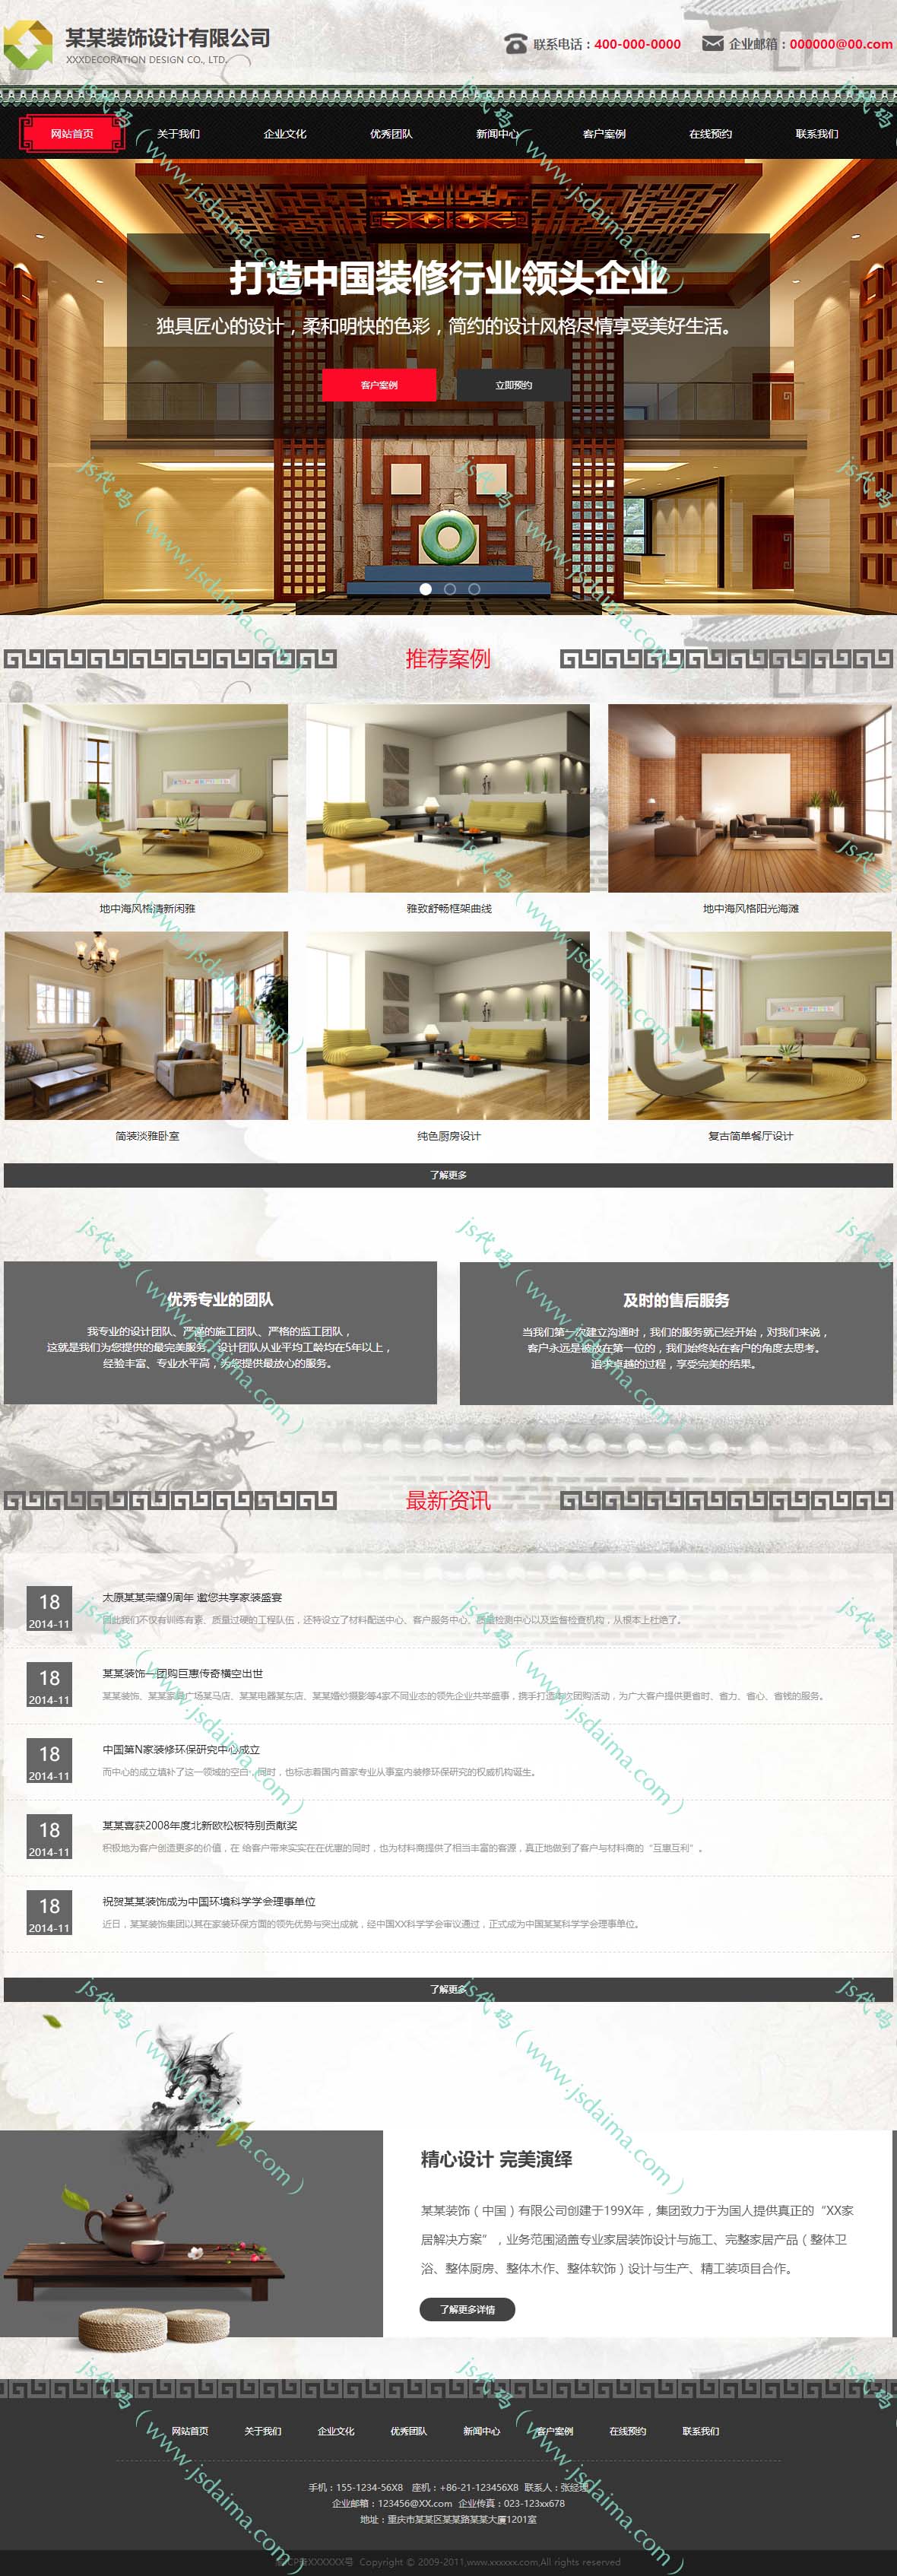 高端大气复古与现代结合装修装饰设计公司网站模板